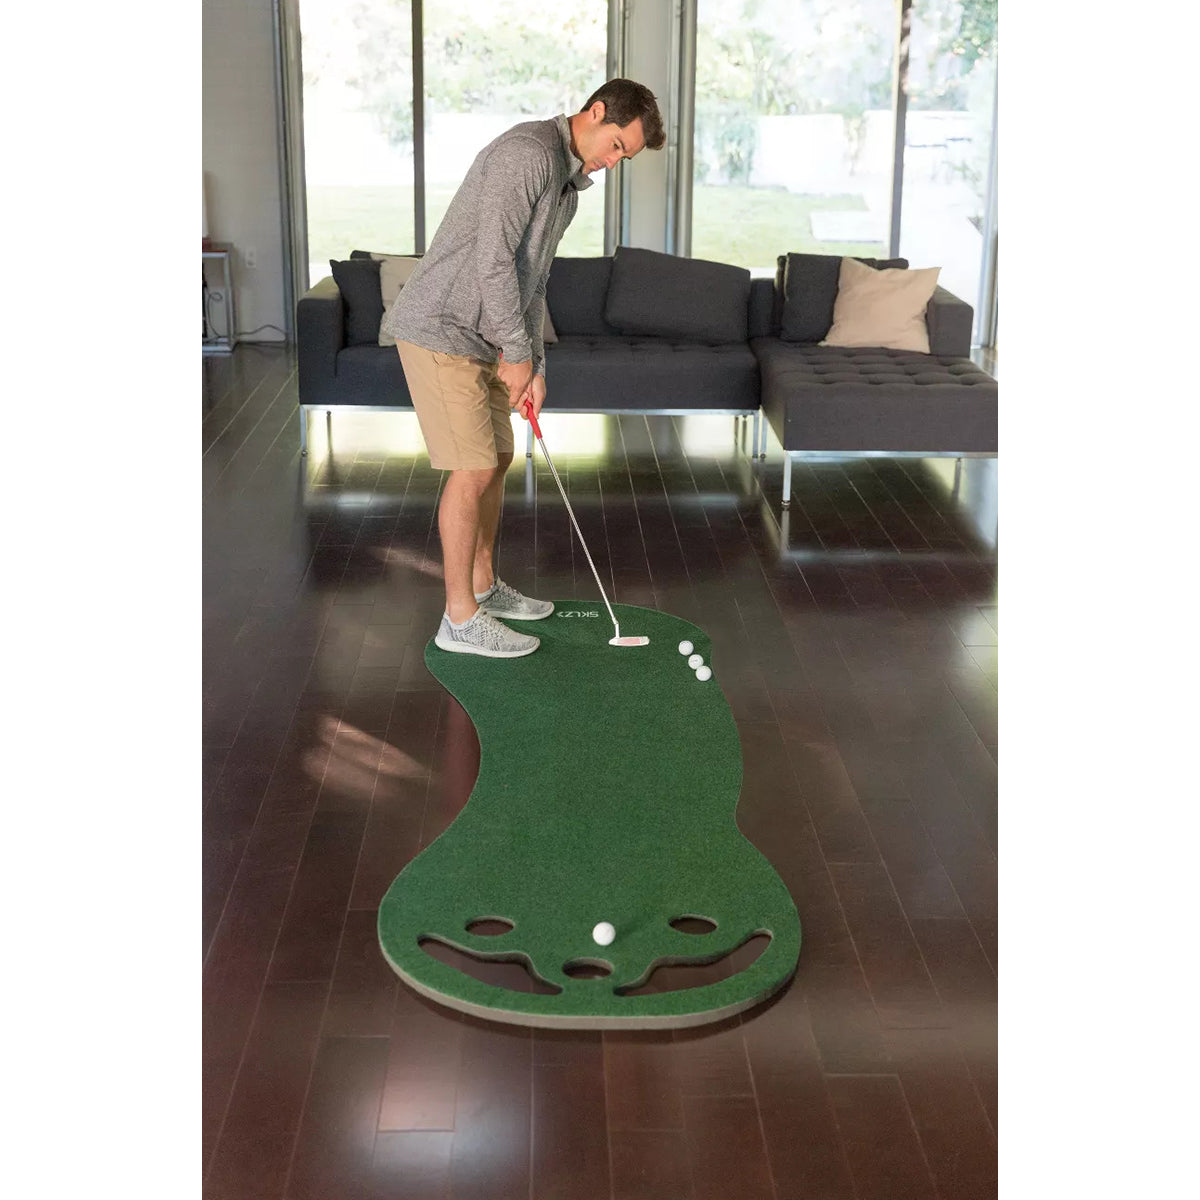 SKLZ Putting Green Indoor Golf Practice Mat - Green SKLZ